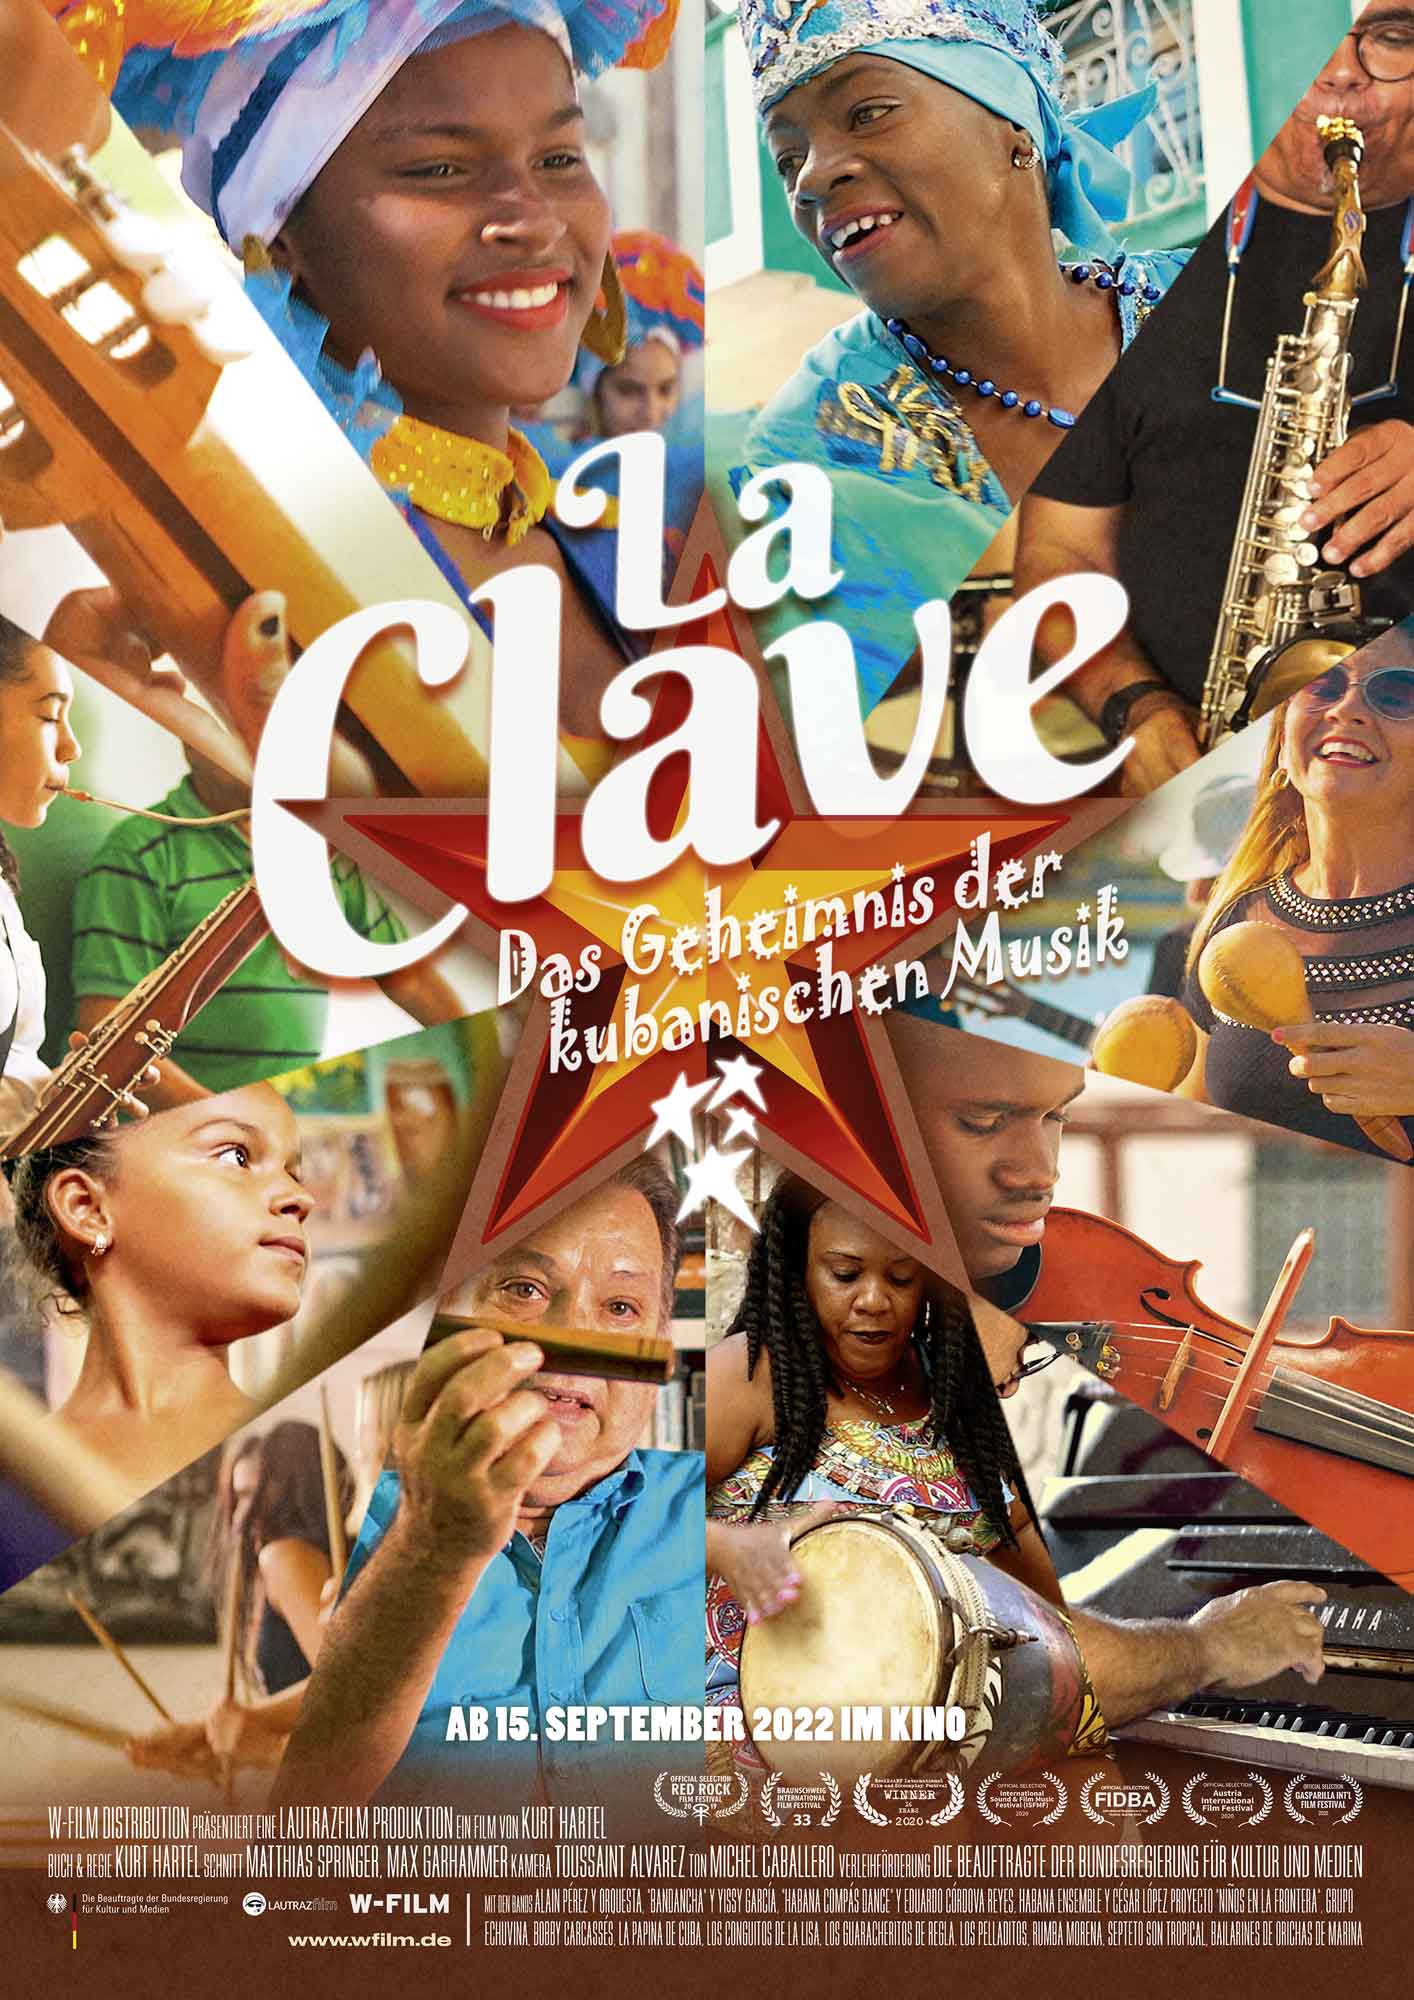 Film: "La Clave – Das Geheimnis der kubanischen Musik"